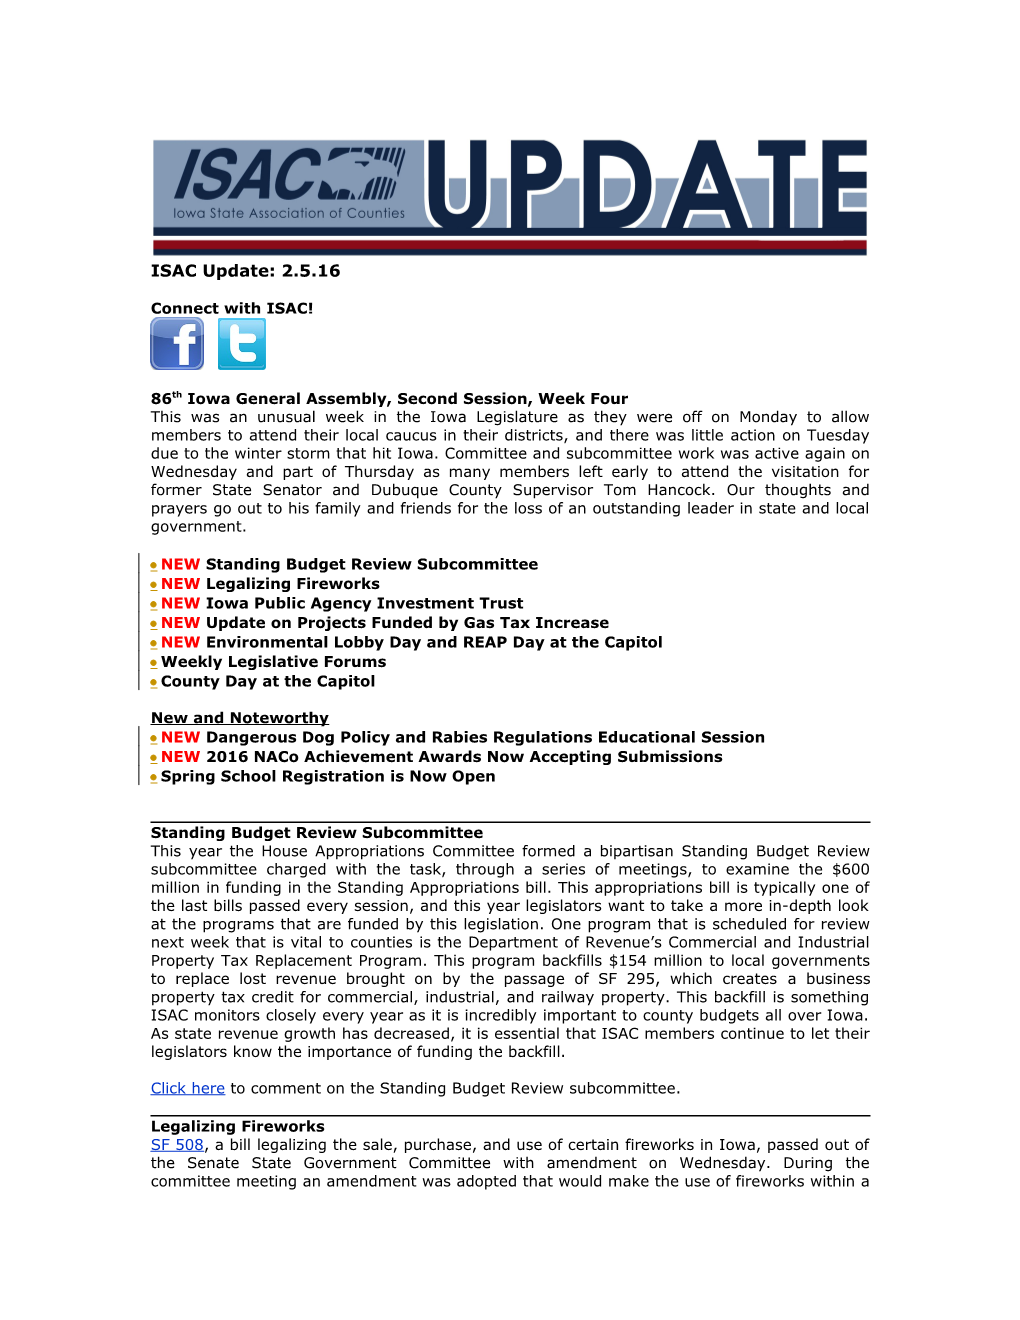 ISAC Legislative Update